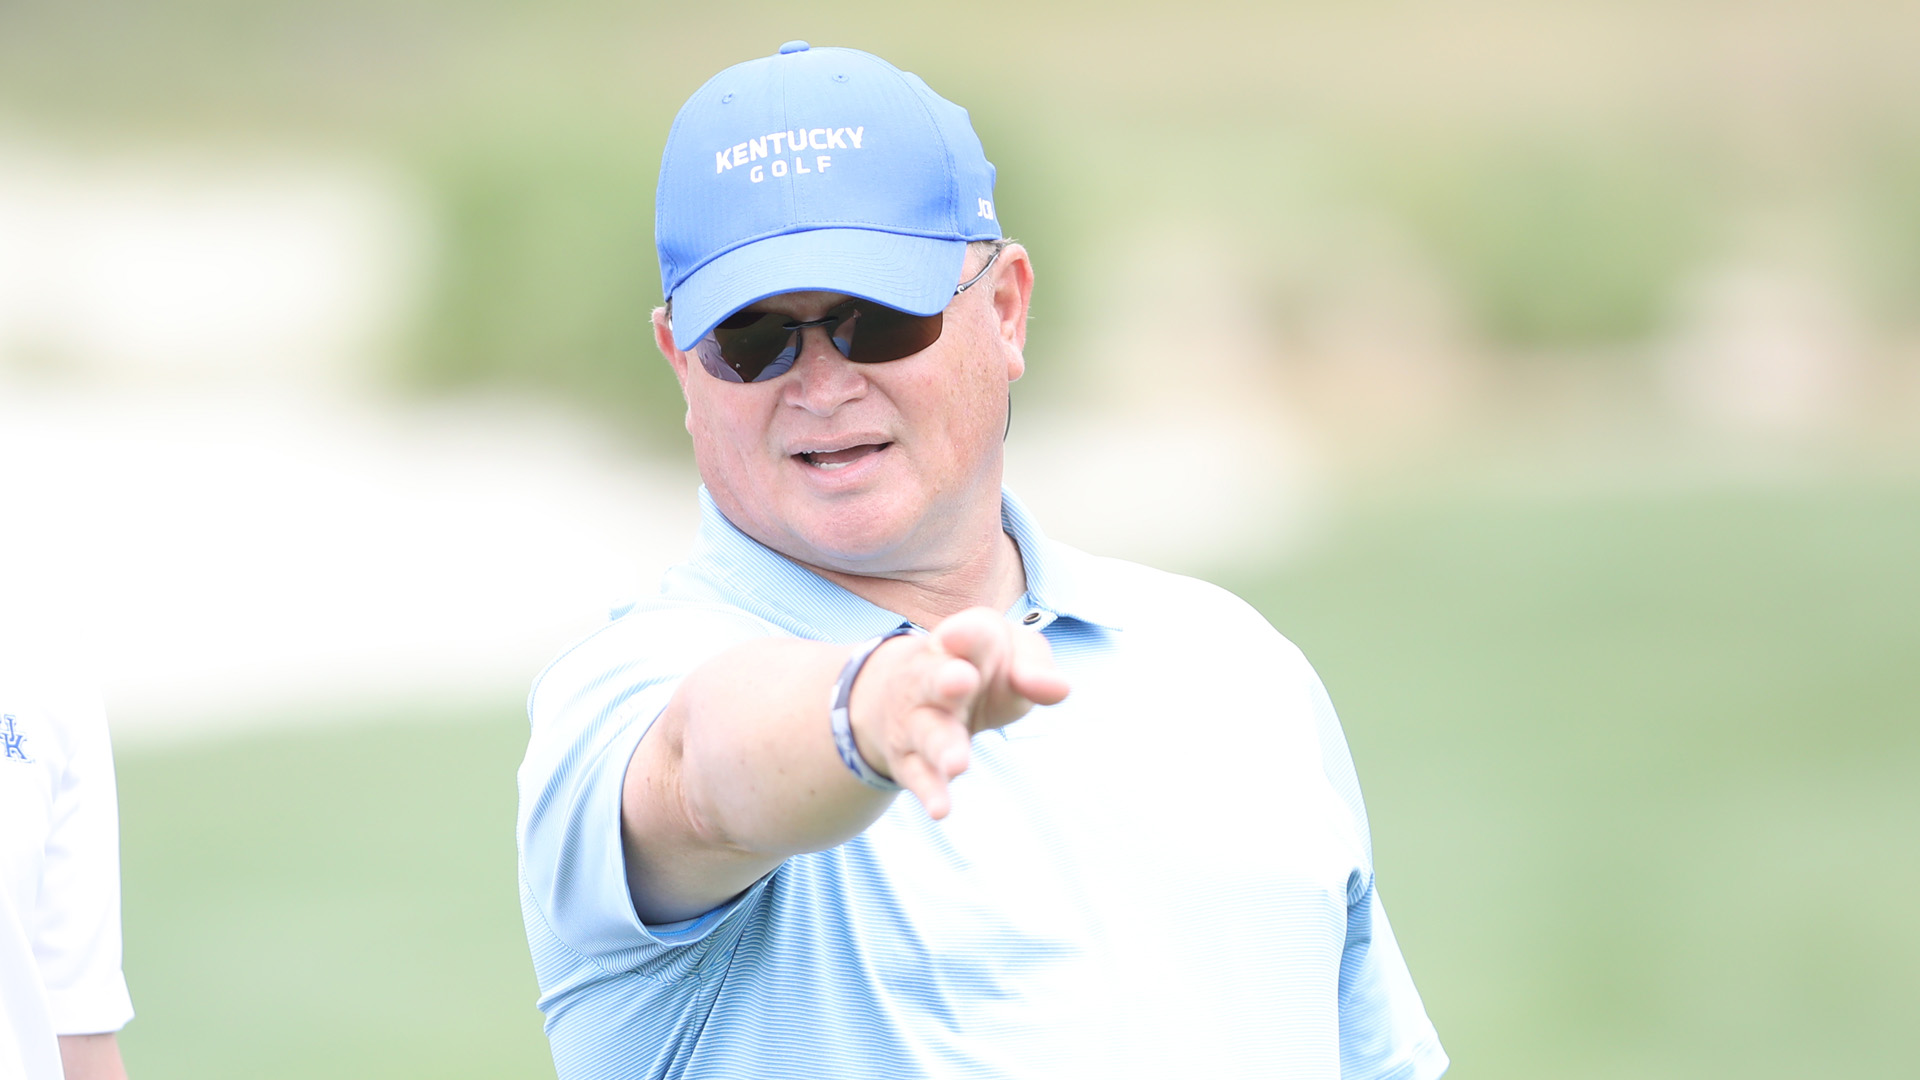 Brian Craig, UK Men's Golf Coach, Has Resigned